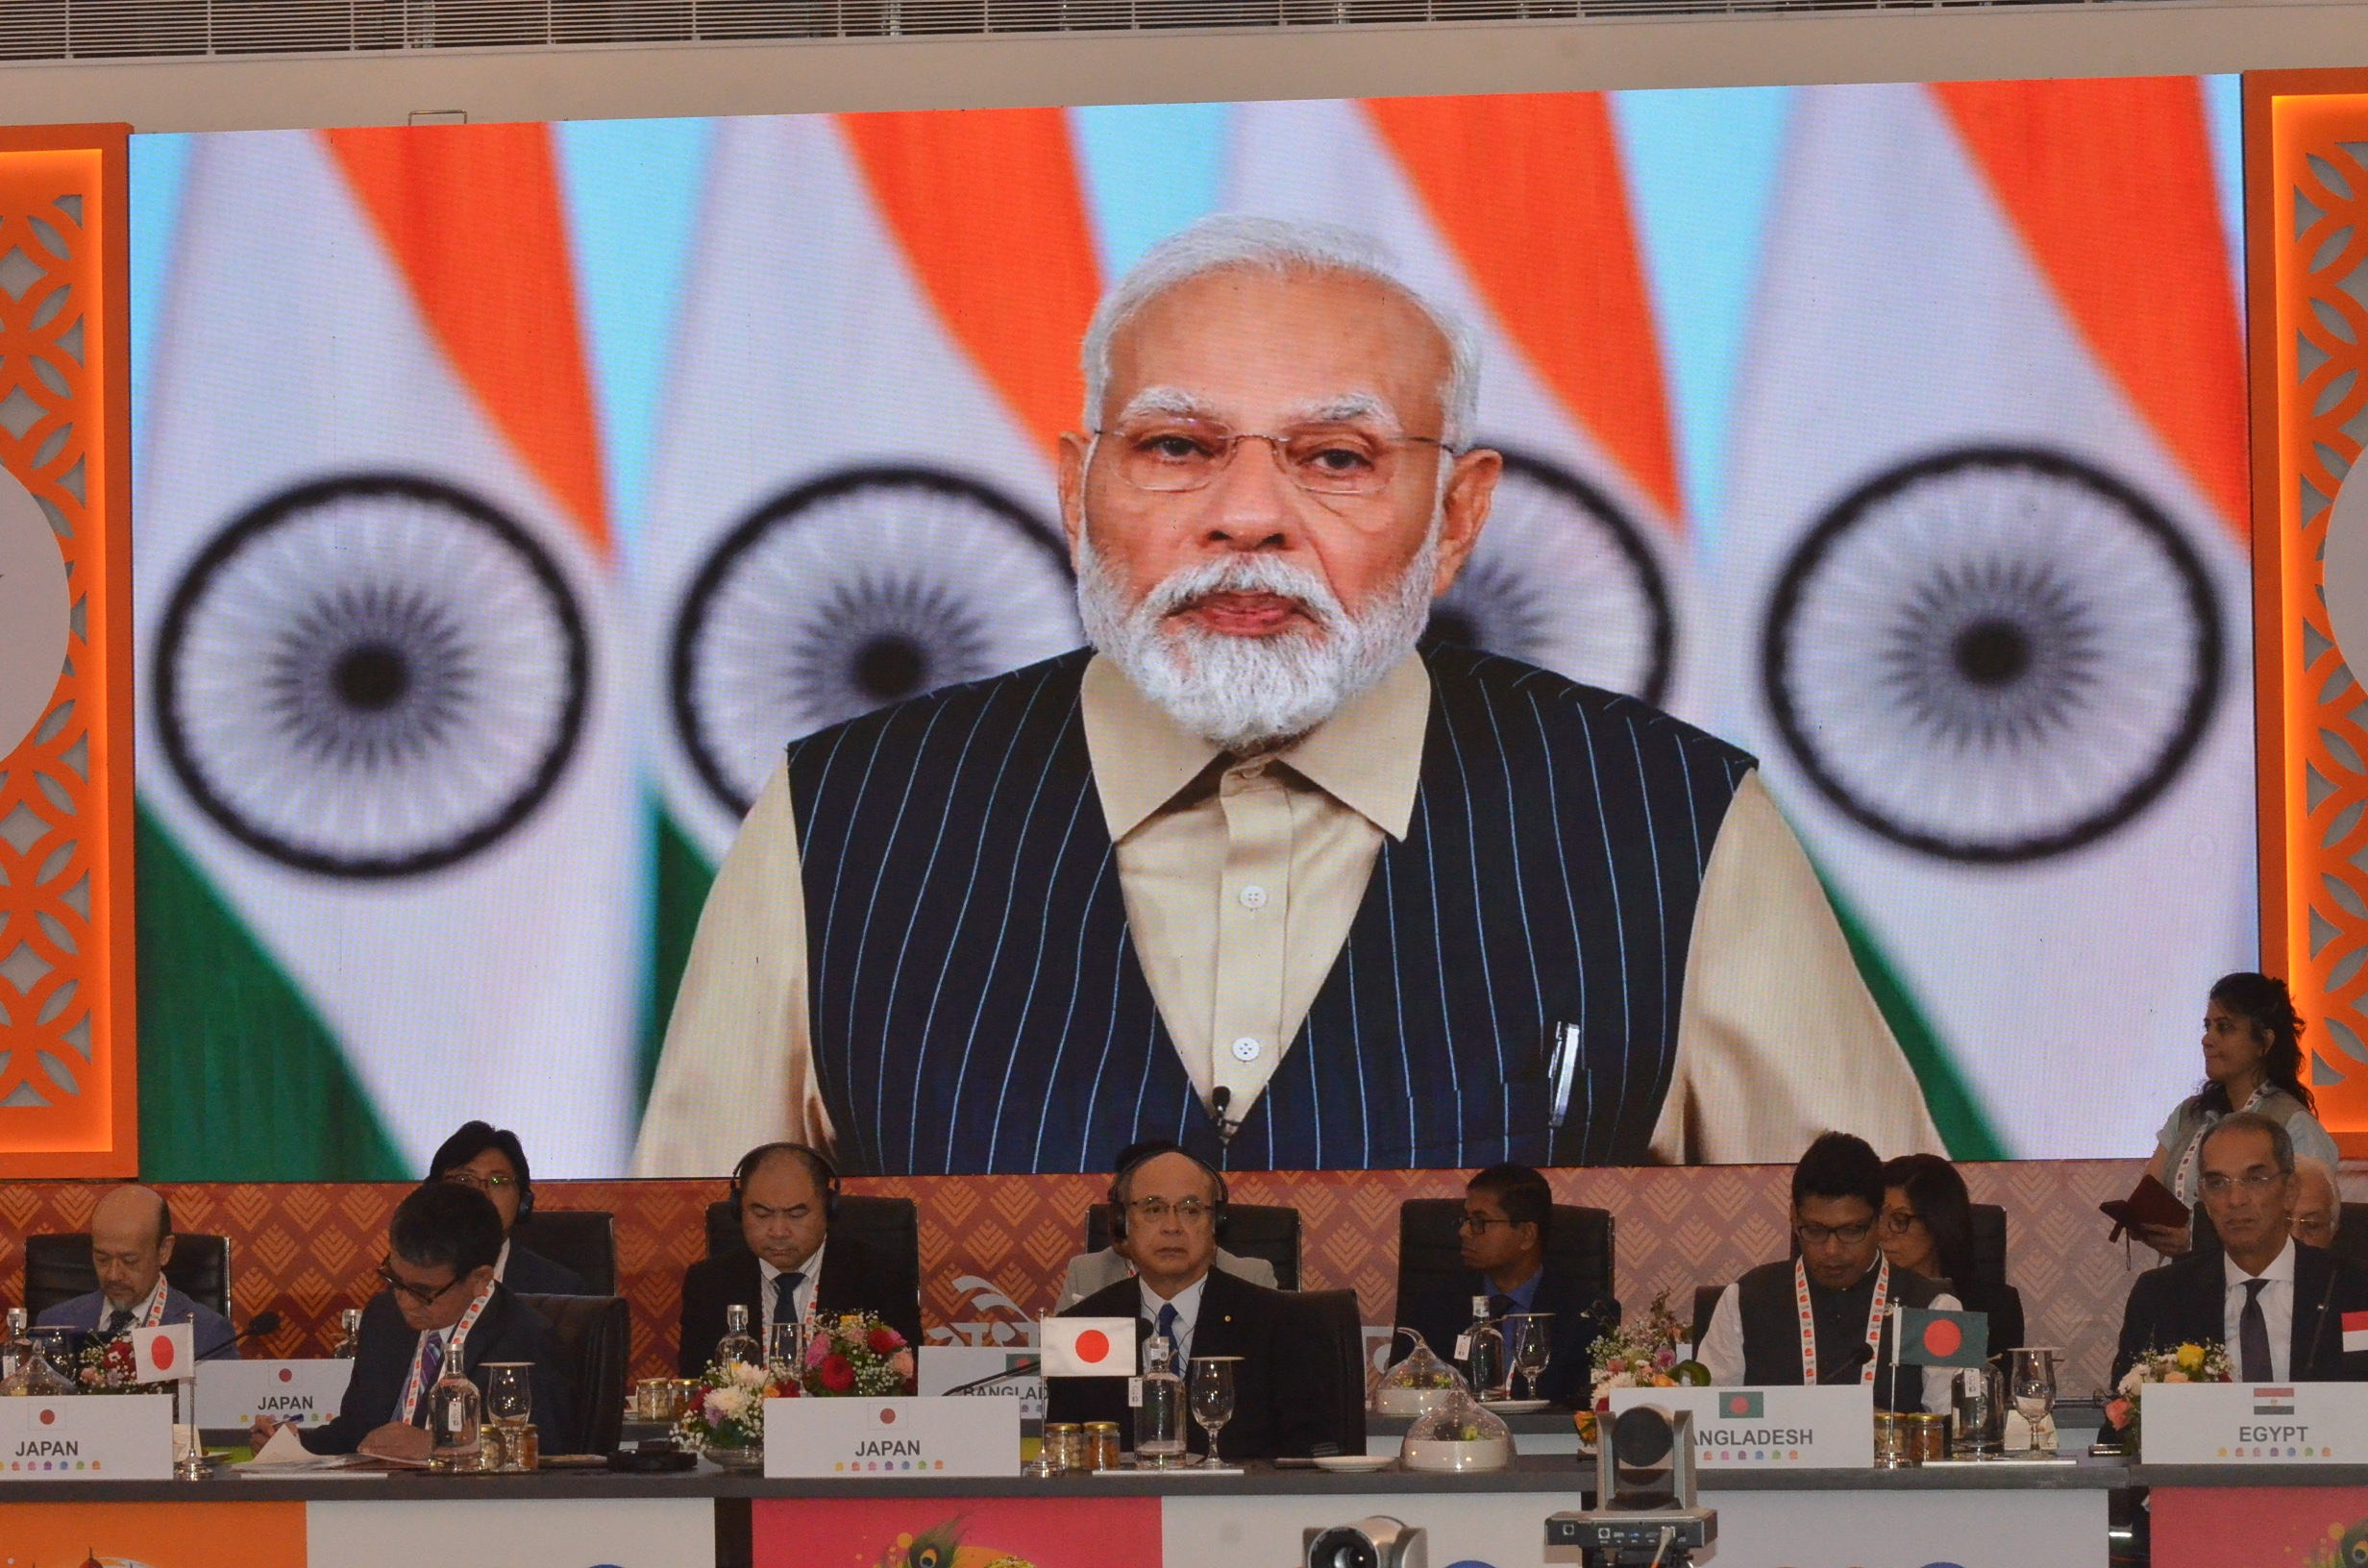 会場の様子。インドのモディ首相がモニターに映し出されている。